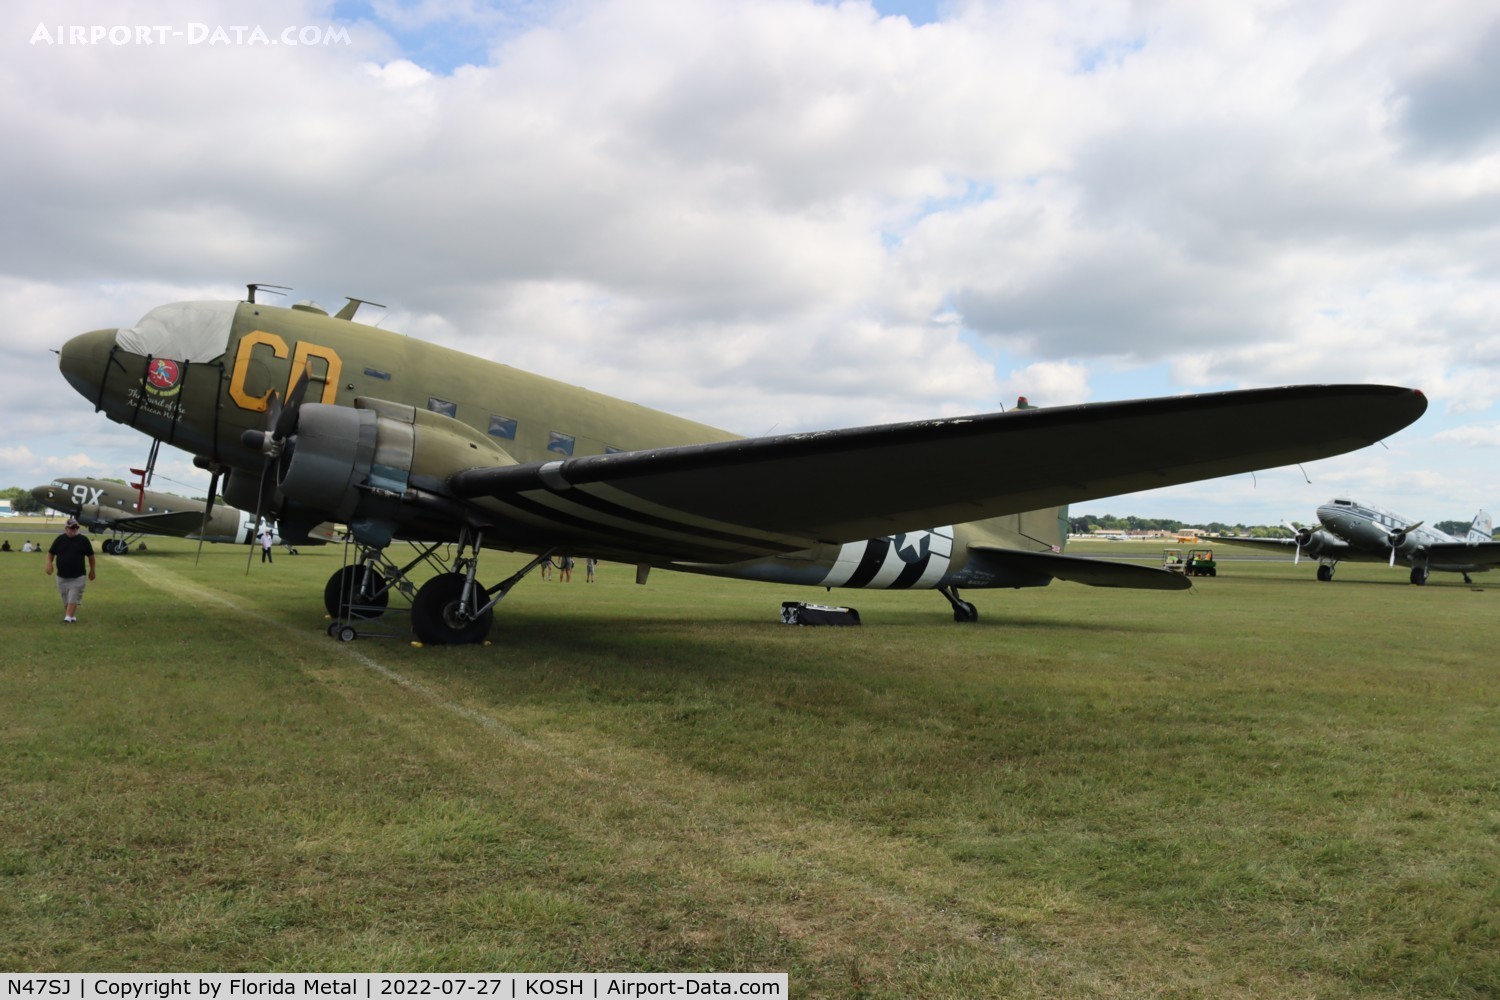 N47SJ, 1943 Douglas DC3C-R (C-47B-5-DK) C/N 14423, C-47 zx